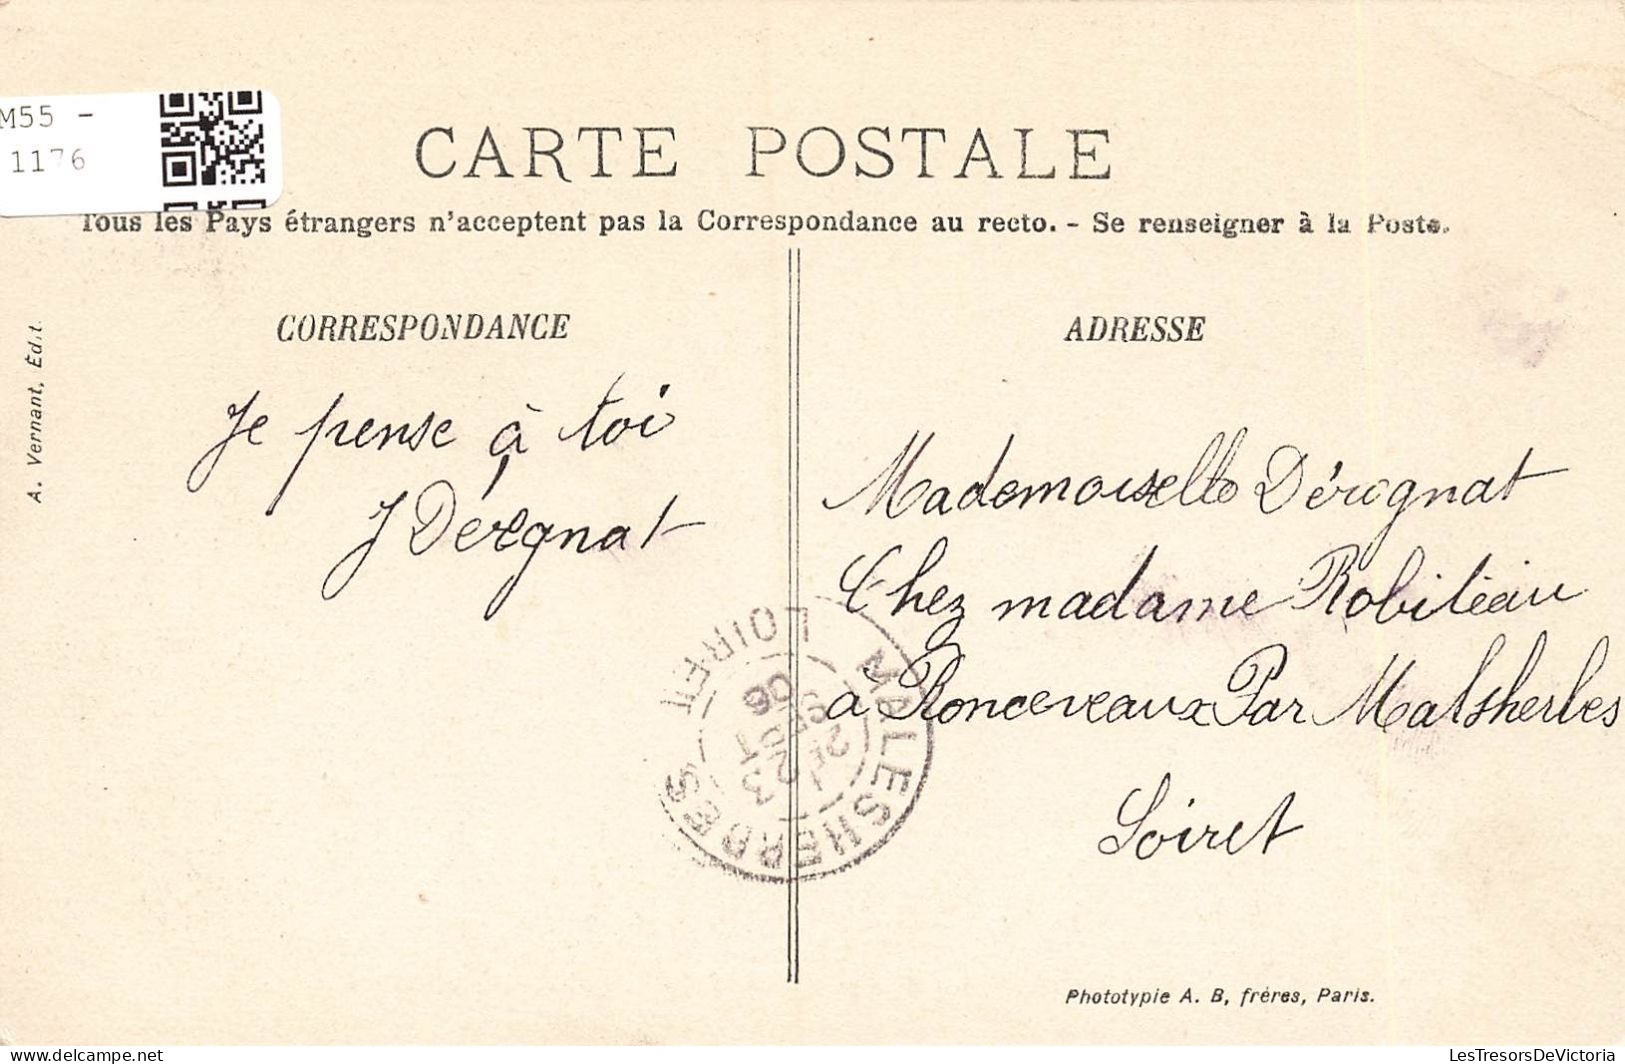 FRANCE - Provins - La Porte Saint Jean - Côté Extérieur - Animé -  Carte Postale Ancienne - Provins